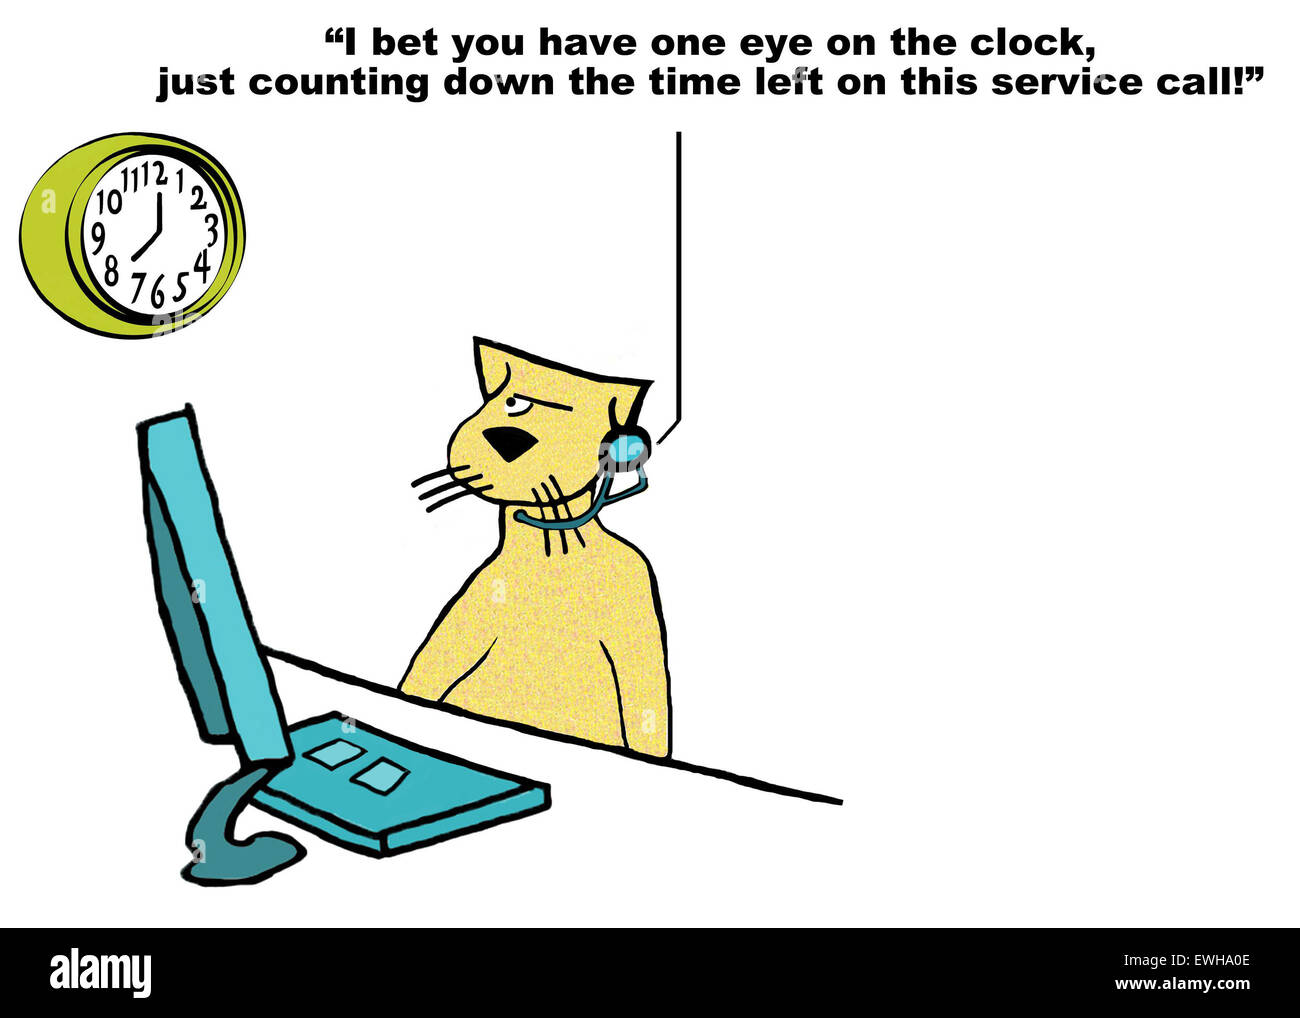 Geschäft Cartoon von Kunden Service Katz und Anrufer sagte: "... Countdown die Zeit auf diesem Serviceabruf Links". Stockfoto